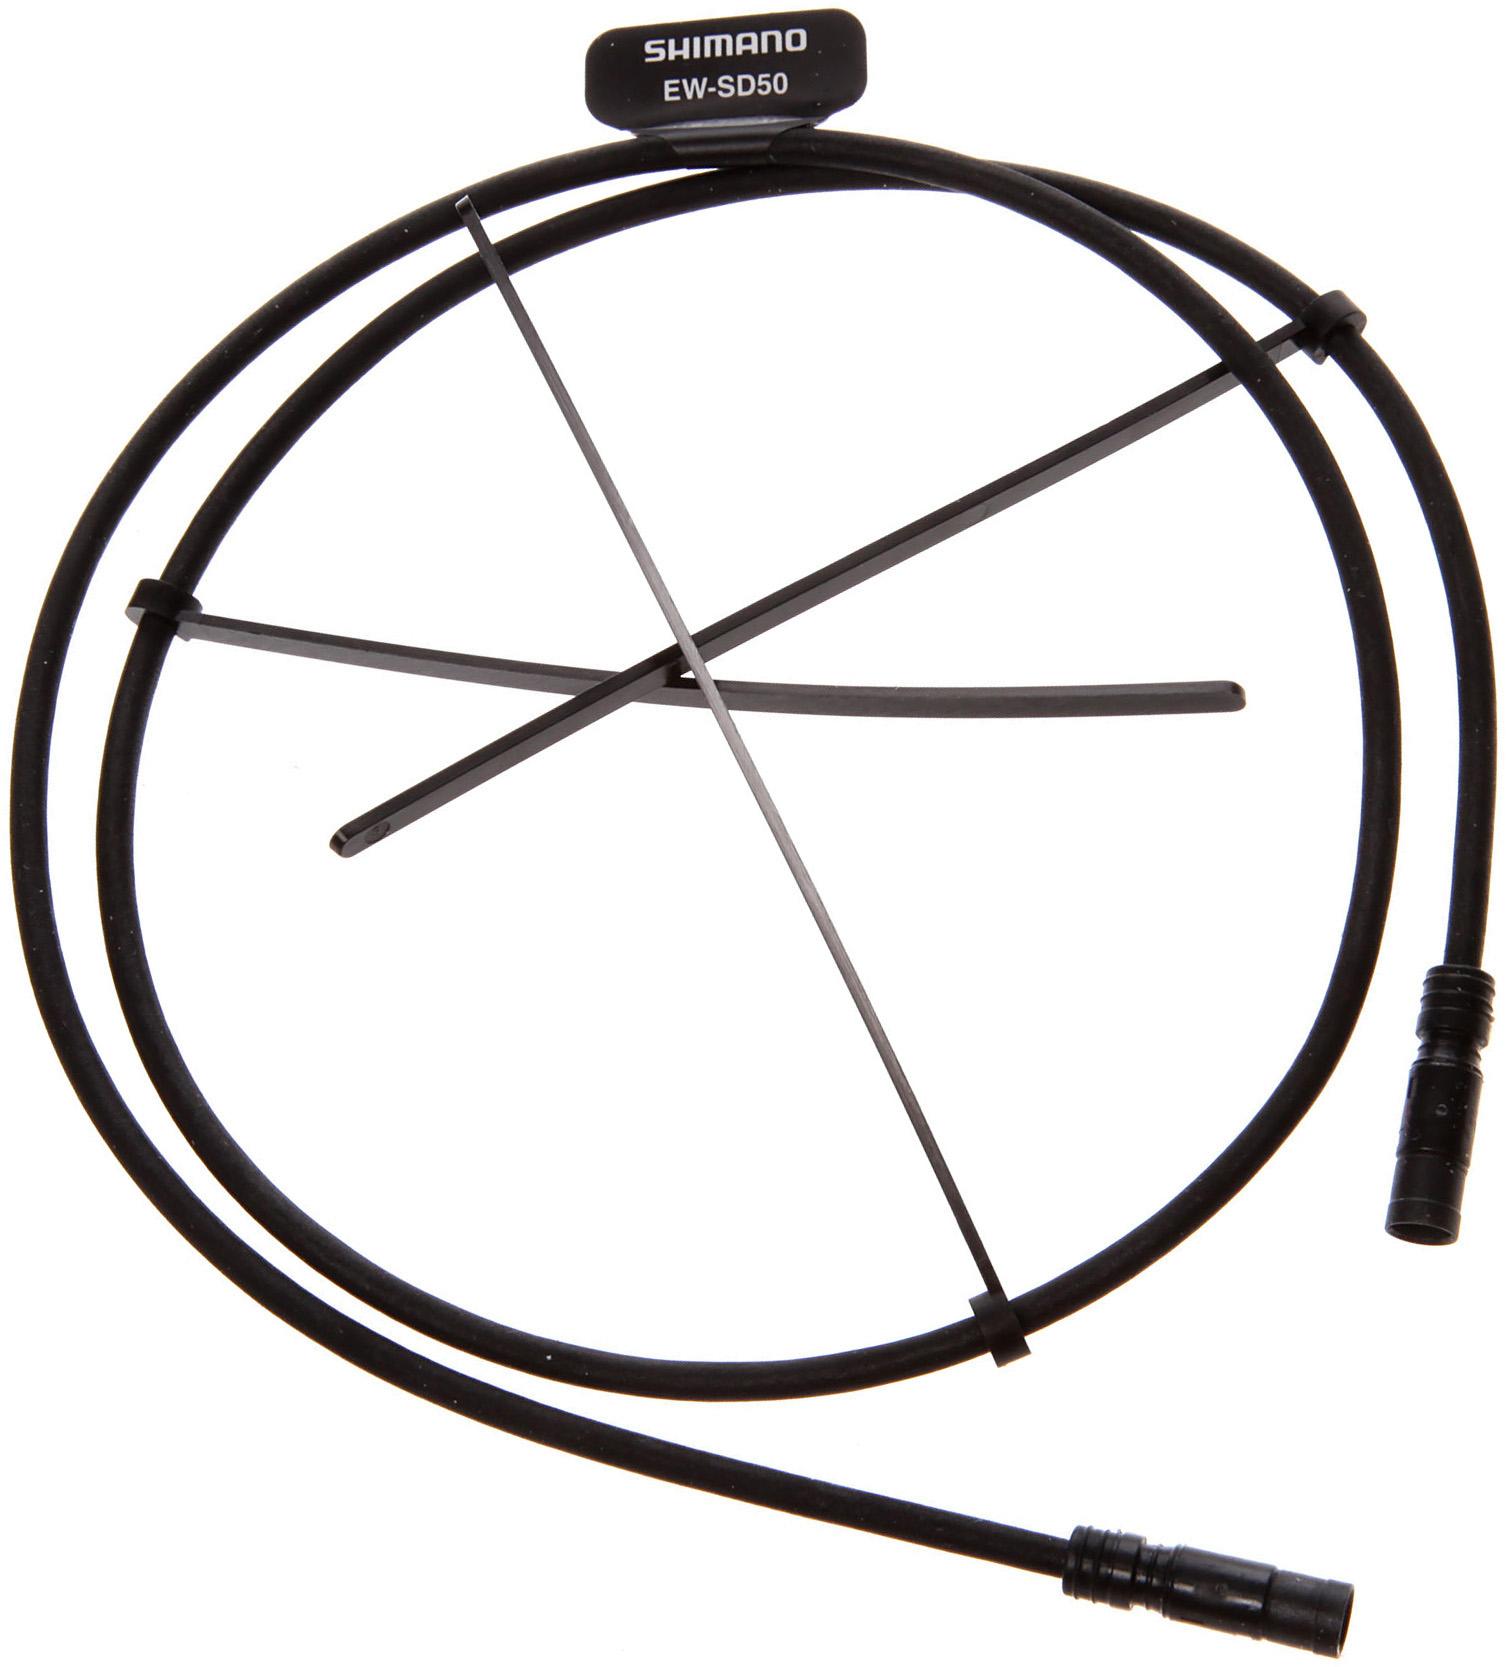 Shimano Ew-sd50 E-tube Di2 Cable  Black